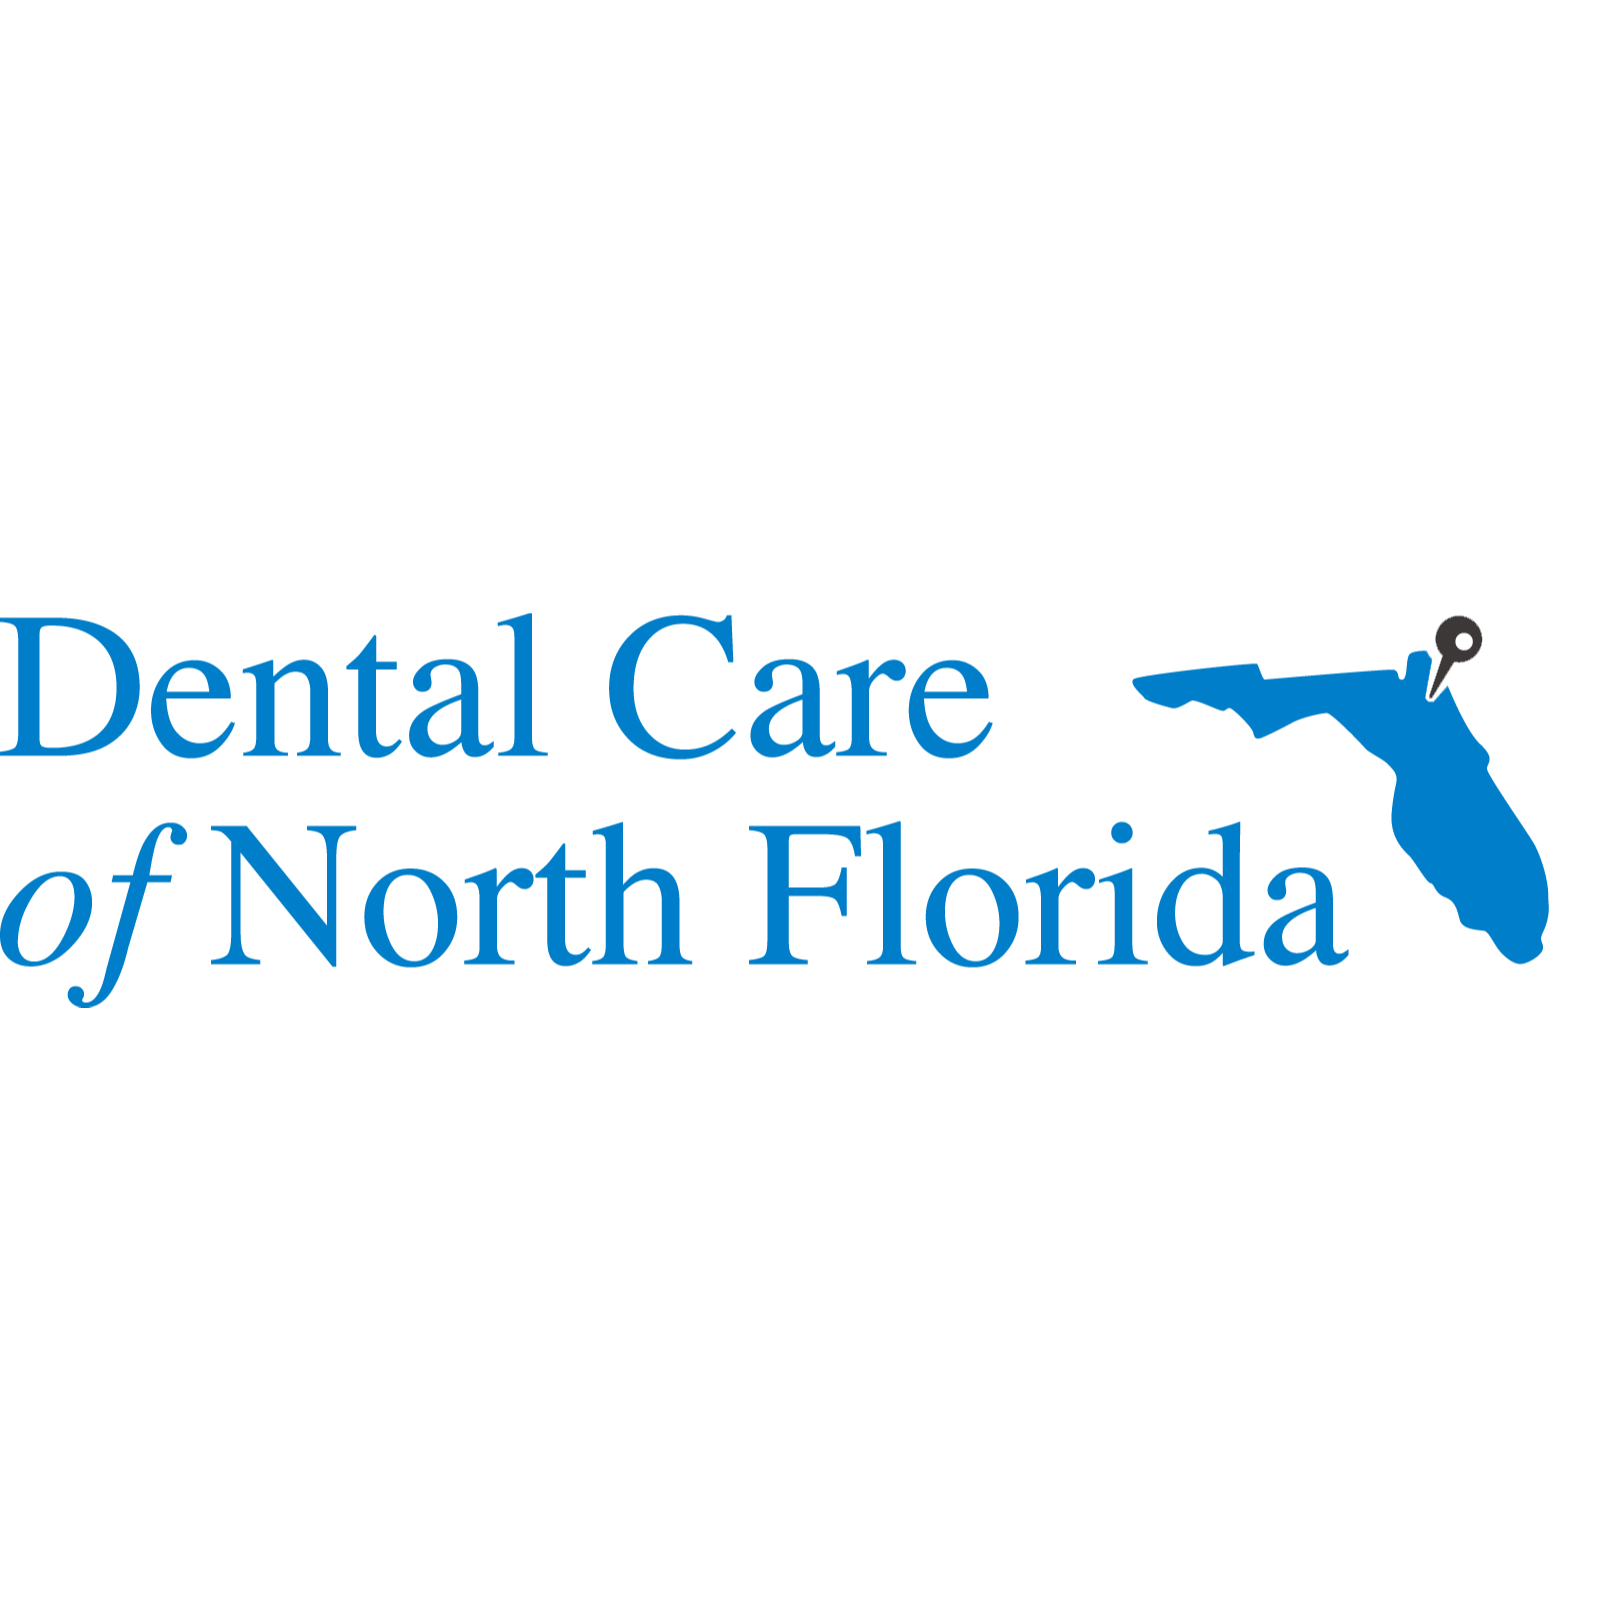 Dental Care of North Florida-Lem Turner-CLOSED - Jacksonville, FL 32208 - (904)764-3844 | ShowMeLocal.com